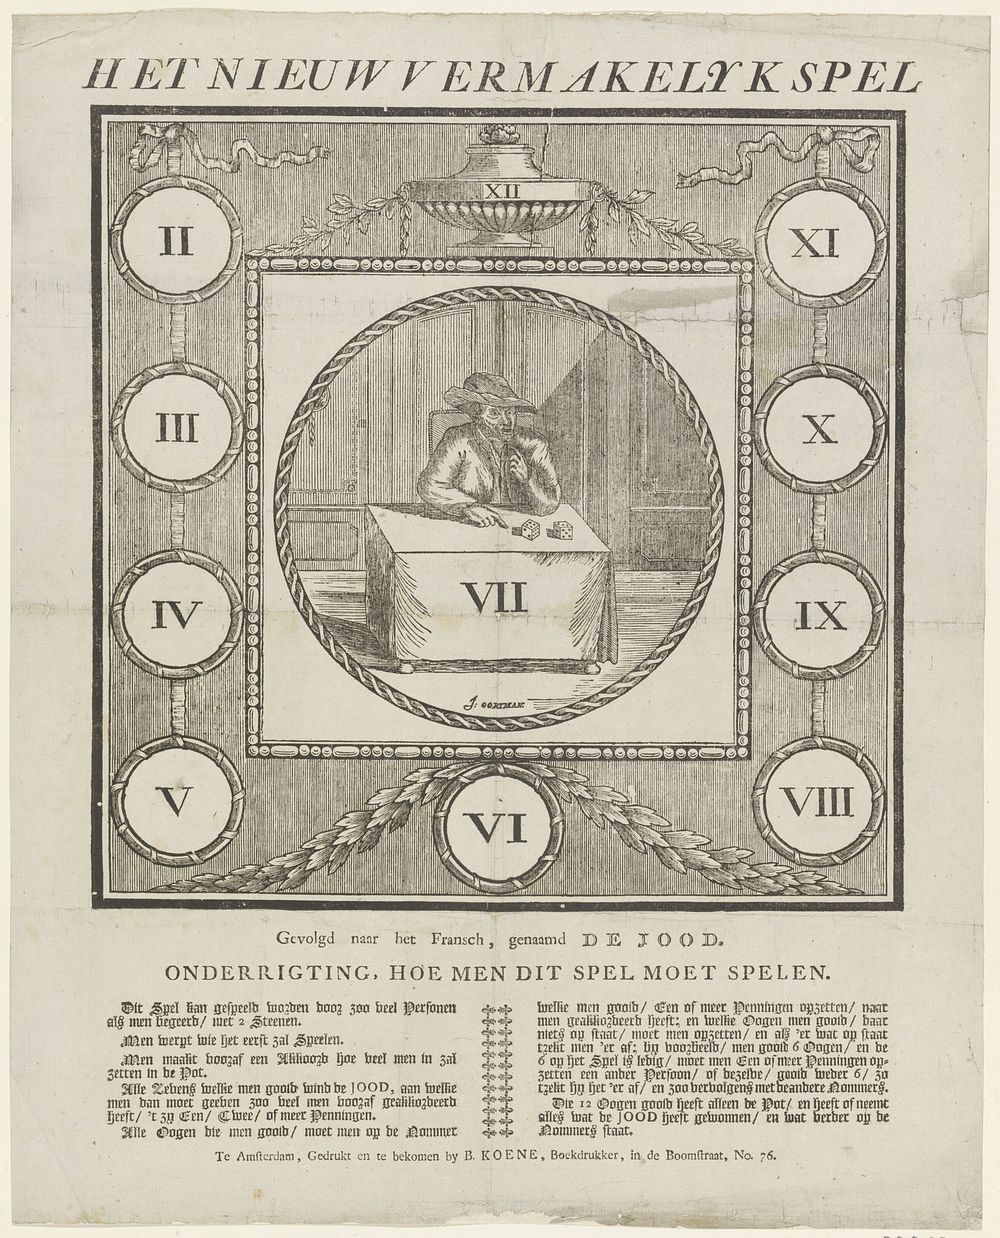 Het nieuw vermakelijk Spel / Gevolgd naar het Fransch, genaamd de Jood (1814 - 1830) by Jan Oortman Sr and Barend Koene III